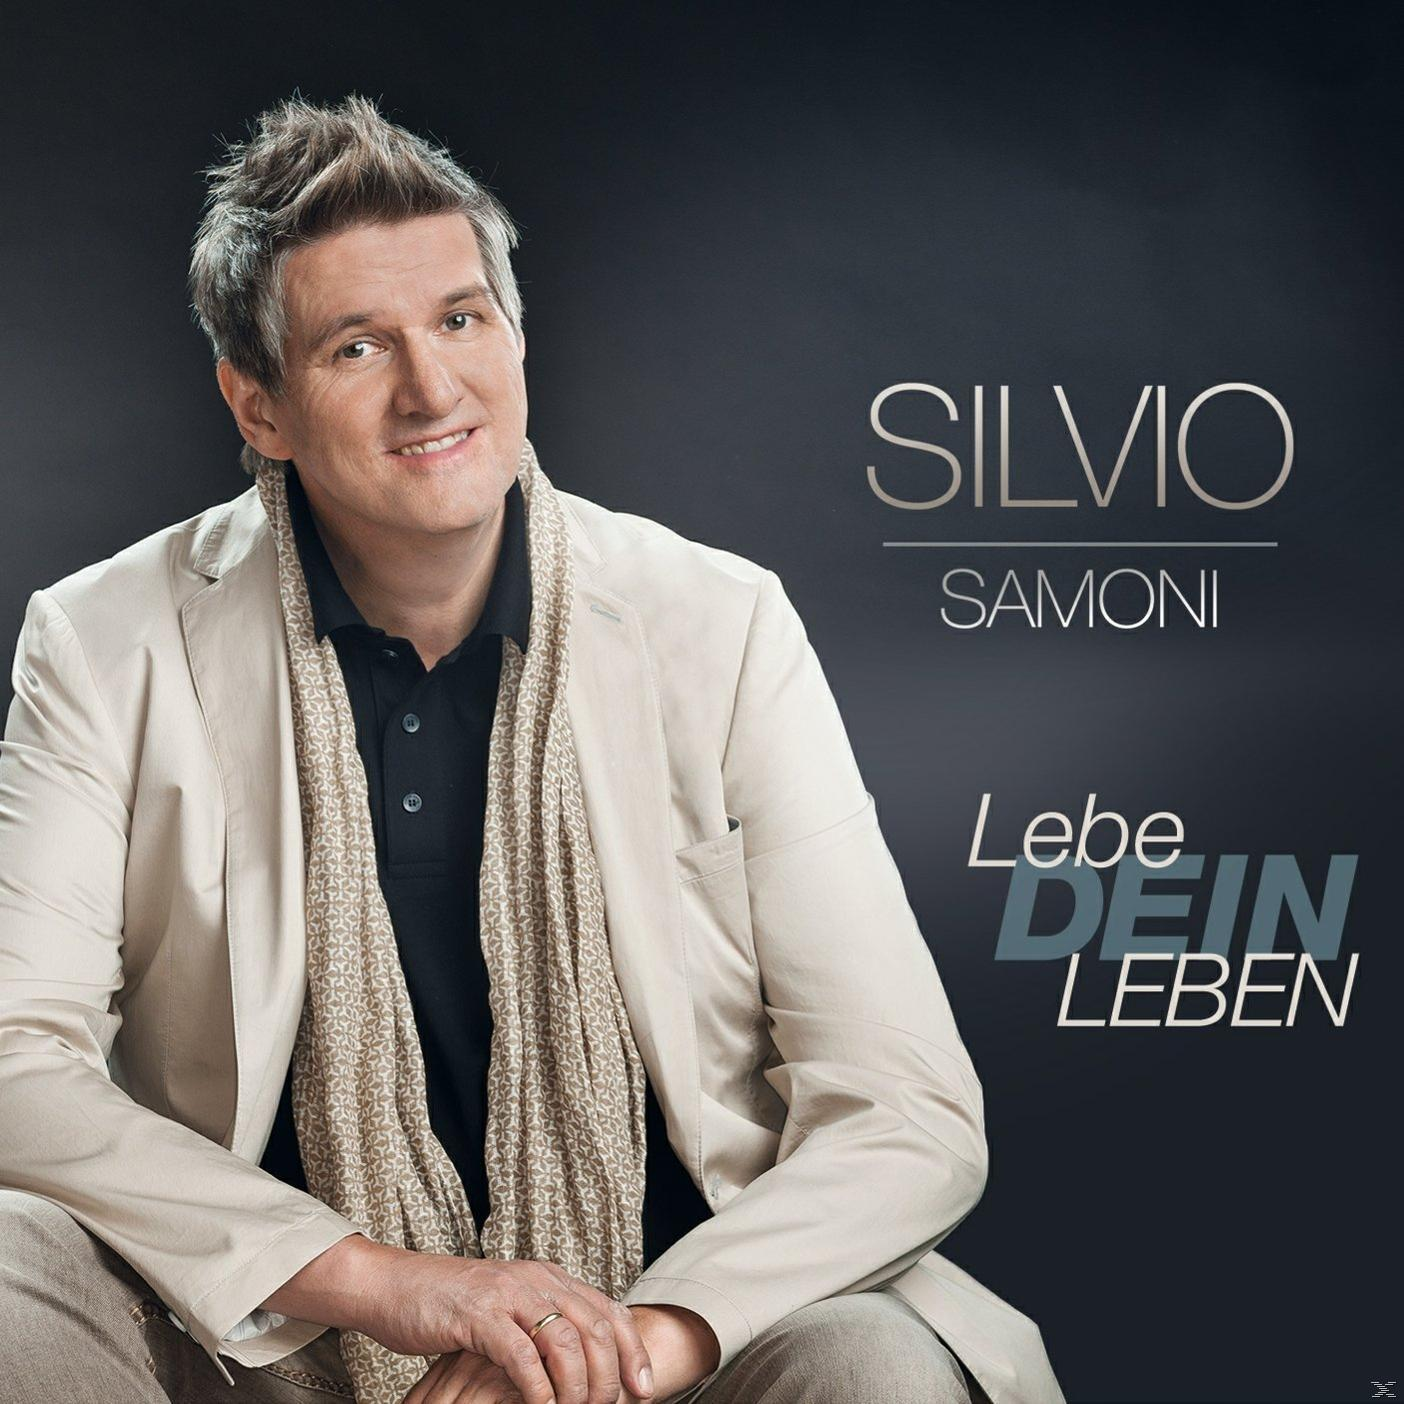 Silvio Samoni - Dein (CD) - Leben Lebe